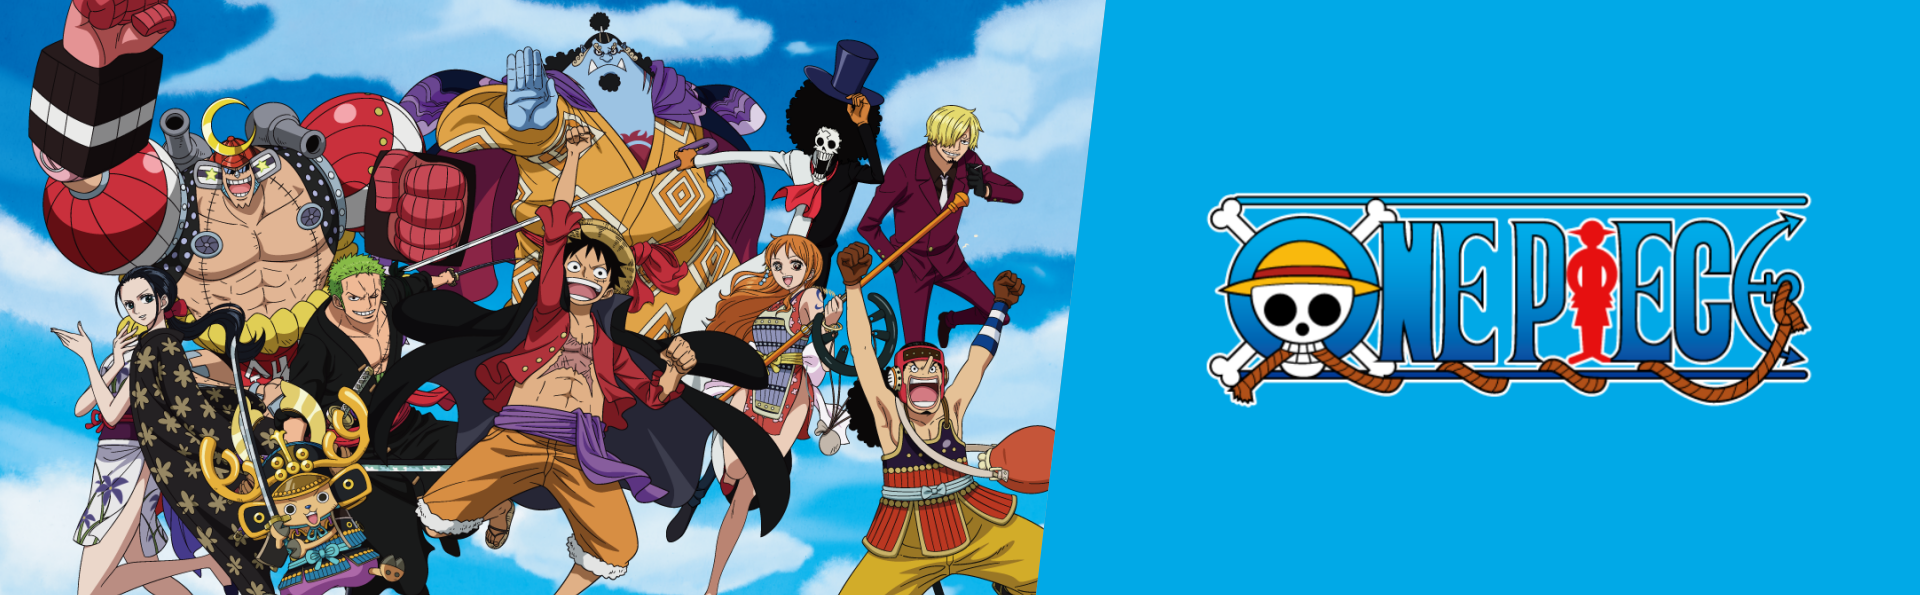 Toei Animation anuncia 23ª abertura de One Piece